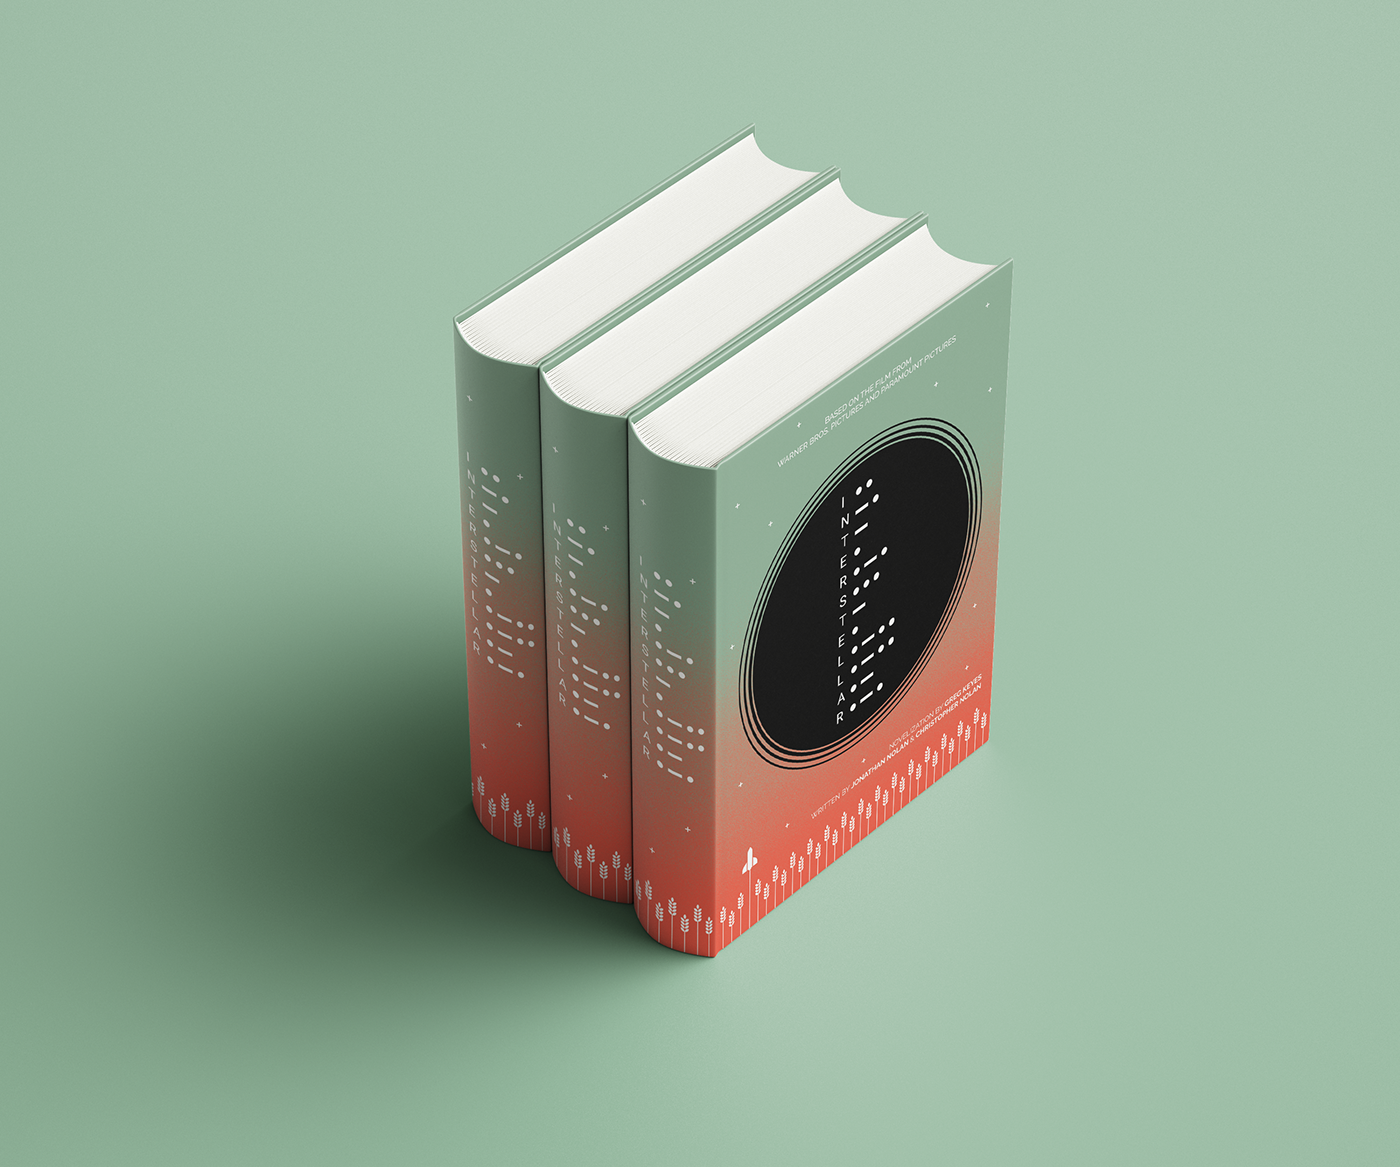 INTERSTELLAR-Book Cover Design on Behance